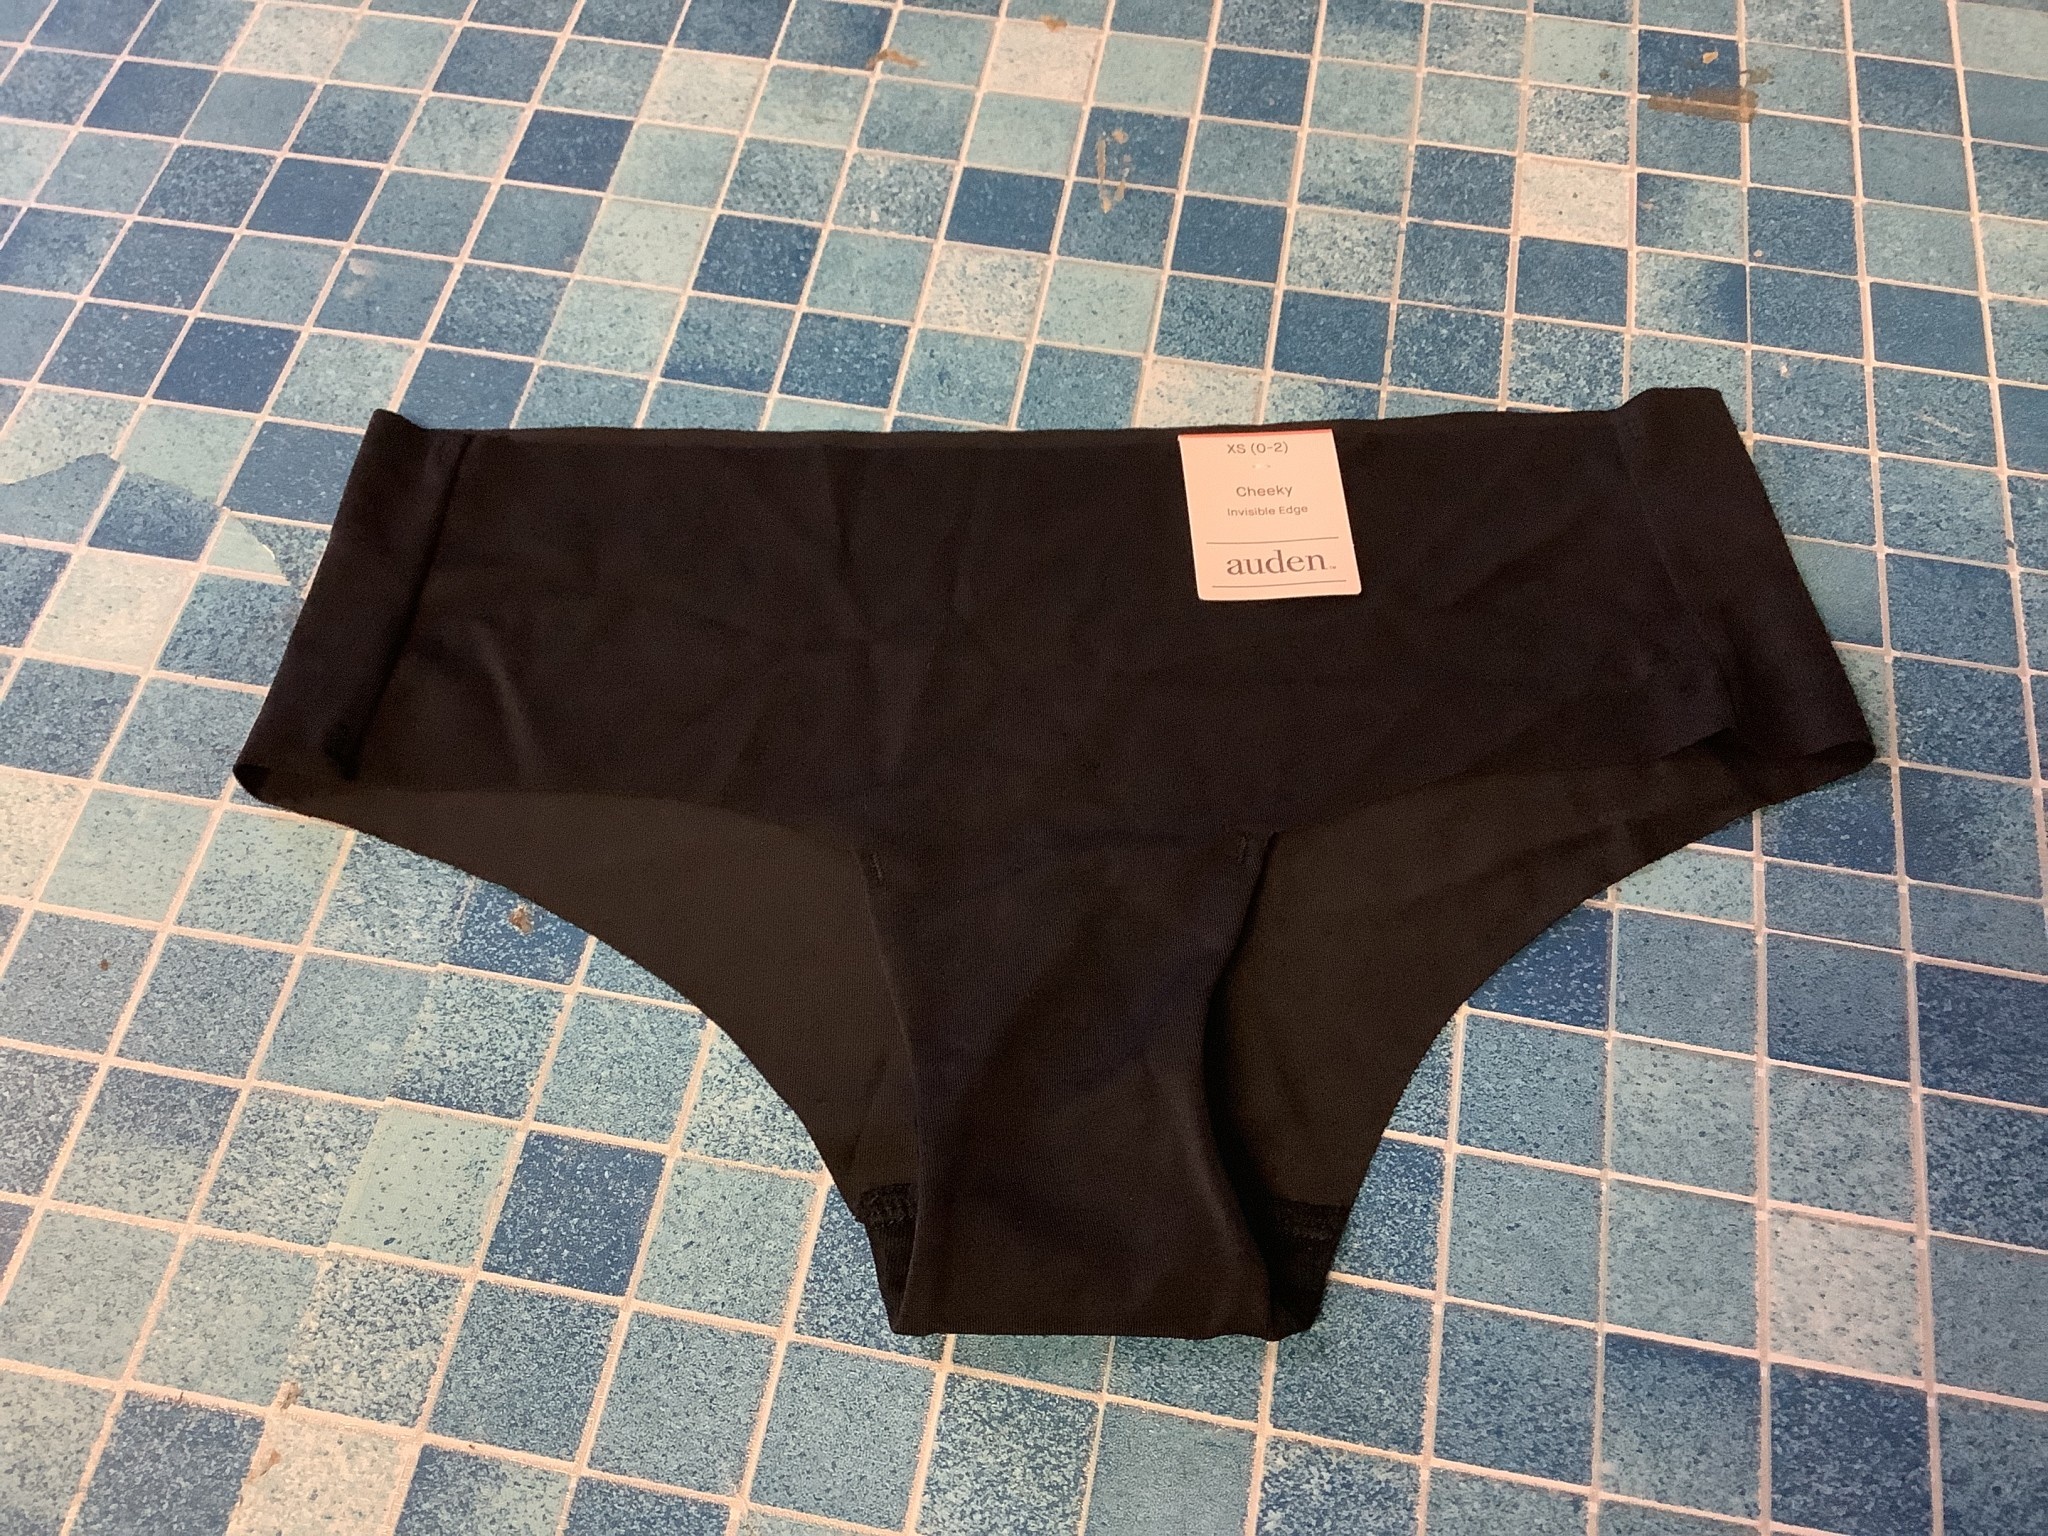 Auden XS Invisible Edge Cheeky Underwear - D3 Surplus Outlet